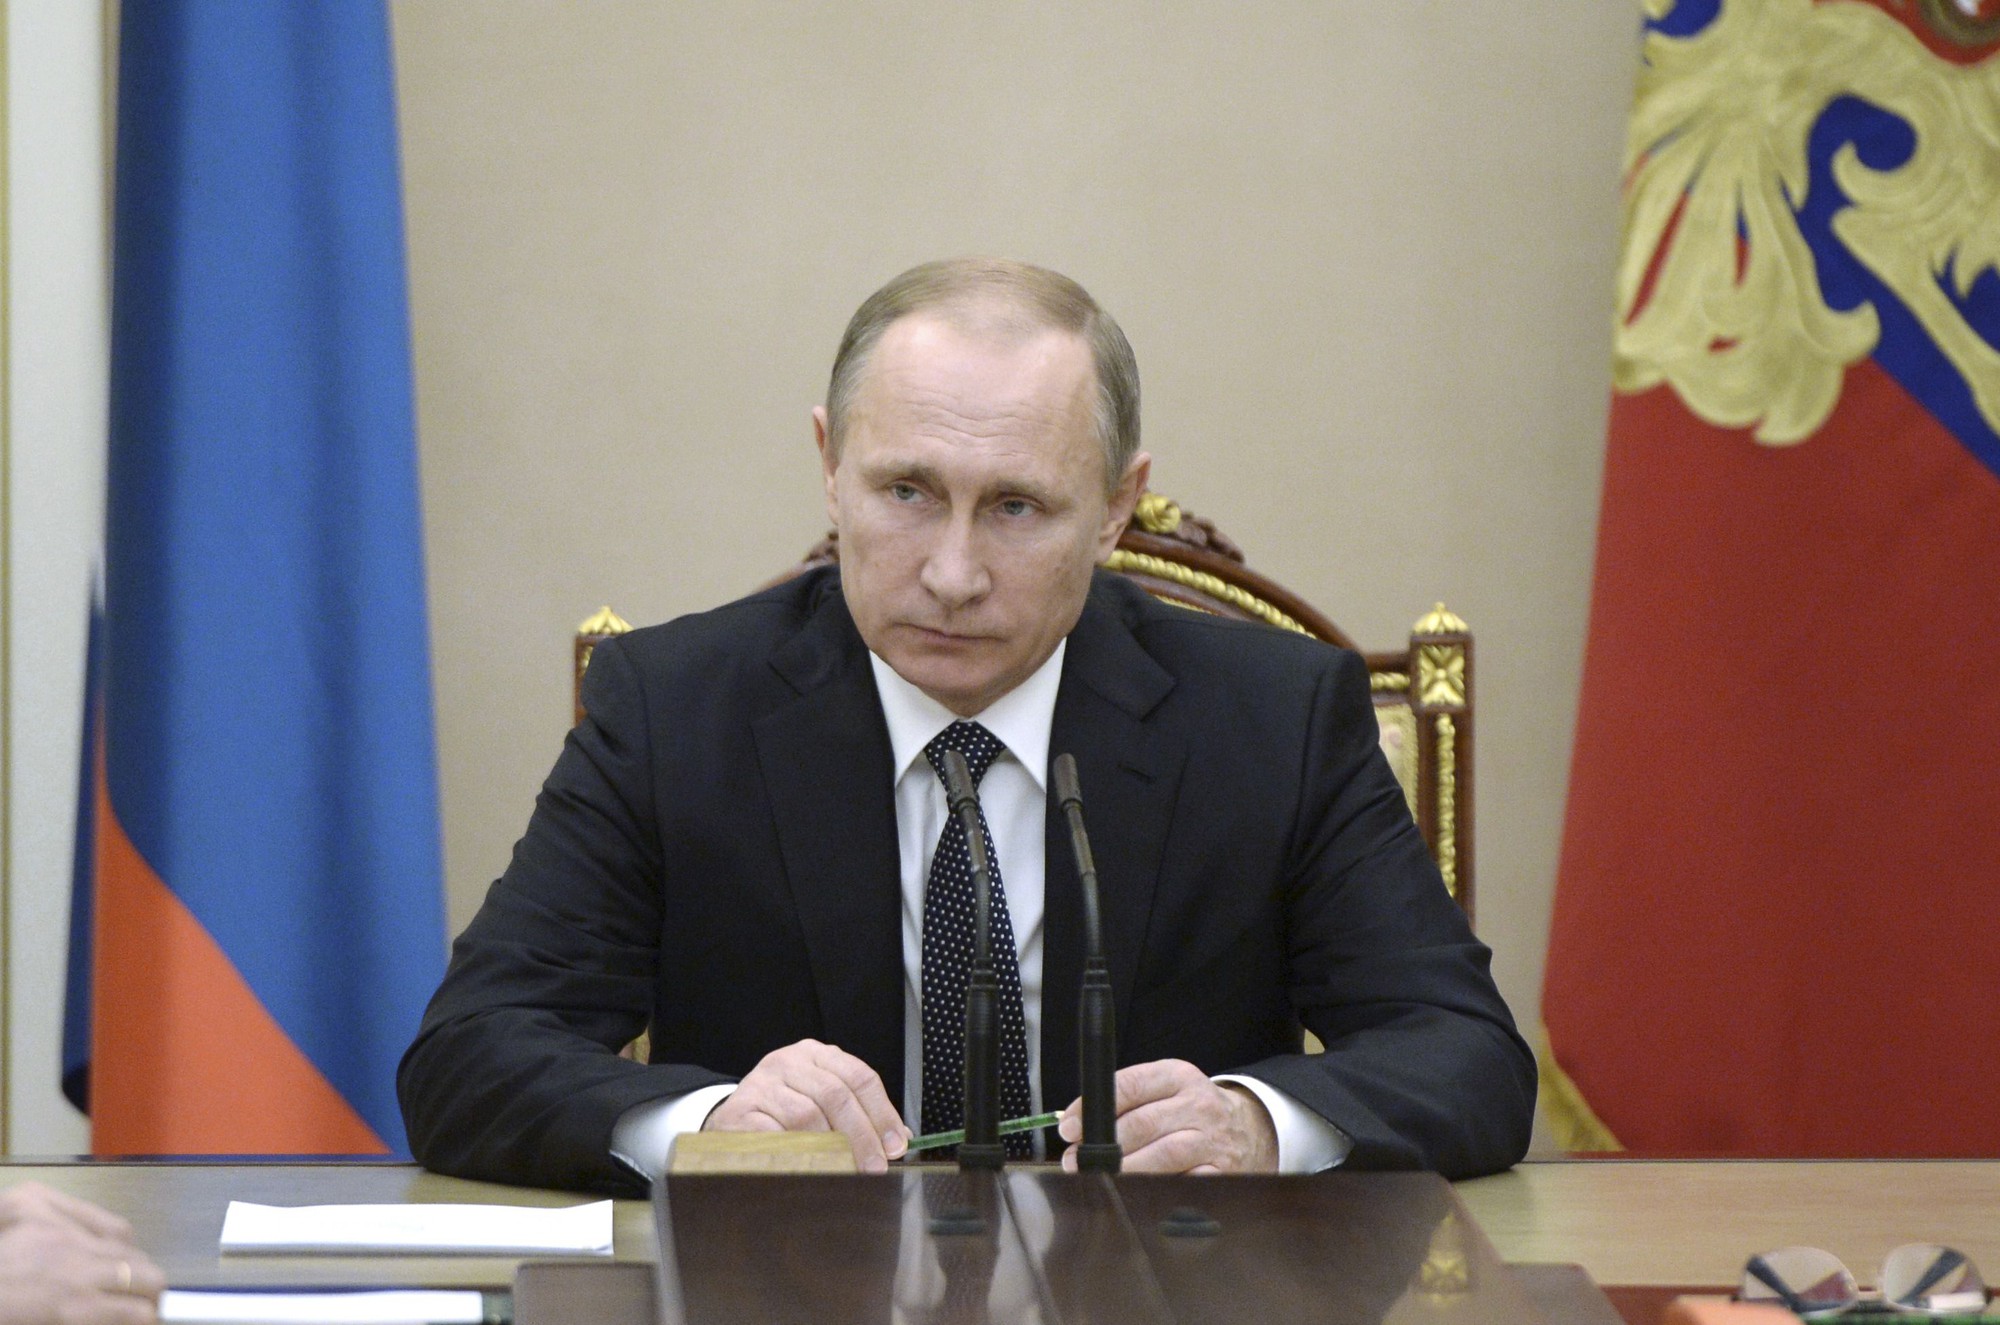 Nhìn lại Tổng thống Putin sau gần 2 thập kỷ nắm quyền - Ảnh 18.